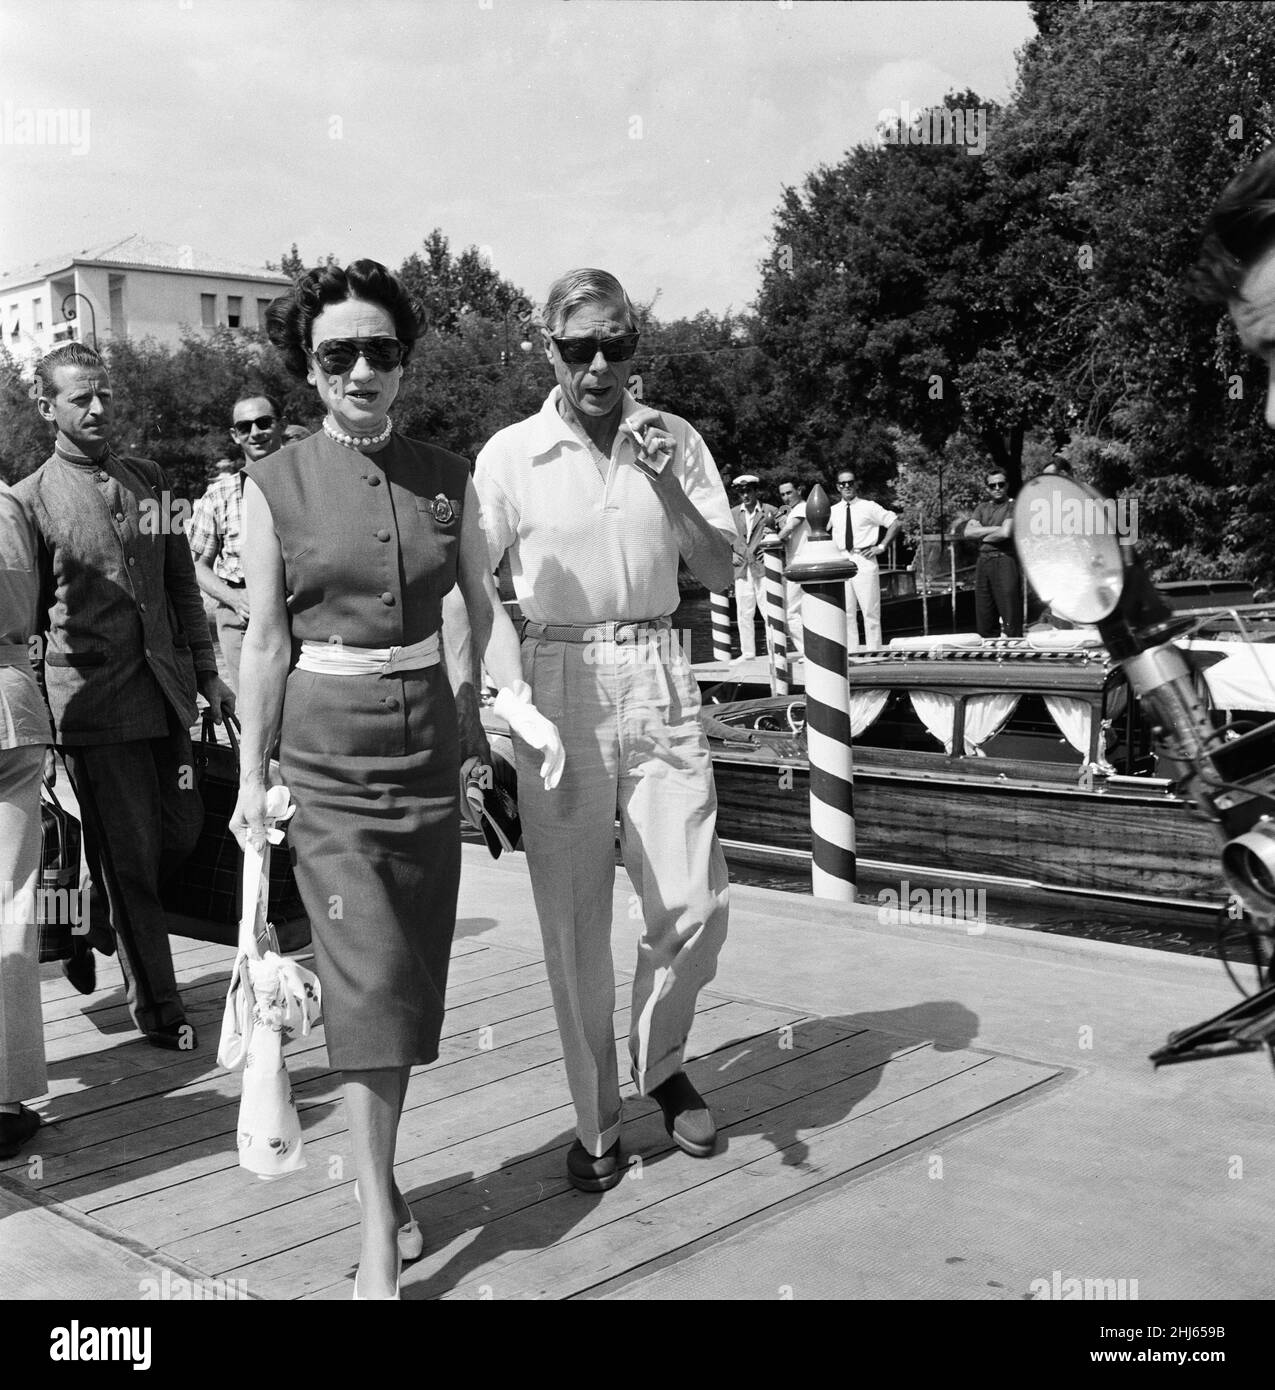 1956 Festival du film de Venise, vendredi 31st août 1956.Notre photo montre ...Duke et Duchesse de Windsor, Prince Edward et Wallis Simpson, descendez de Venise à l'étape d'atterrissage de l'Excelsior. Banque D'Images